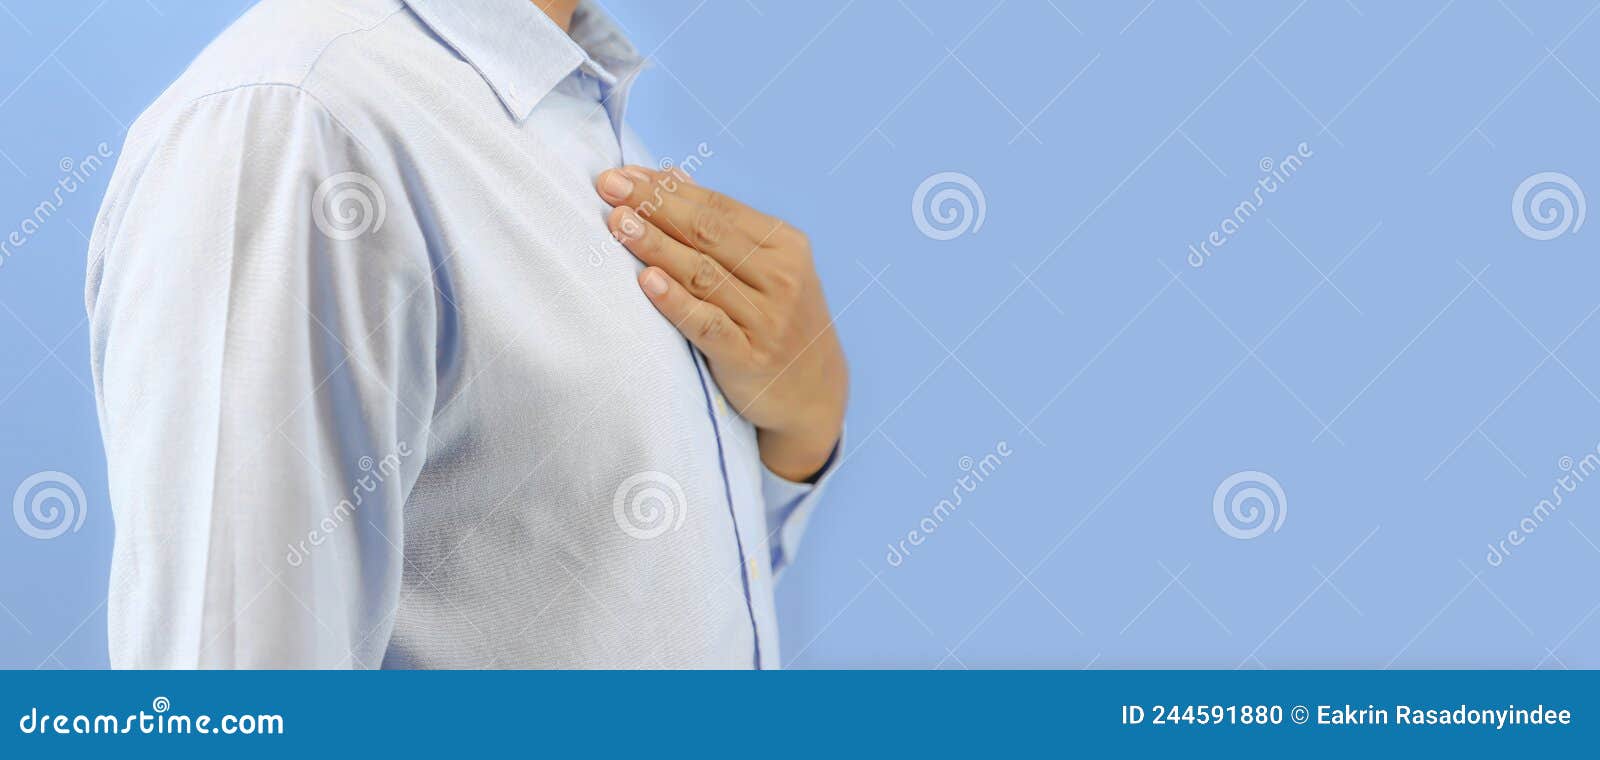 рука держала грудную клетку, как боль в груди или ощущения в центре груди, и медицинское обслуживание для лечения болезни Стоковое Фото - изображение насчитывающей внимательность, жара: 244591880